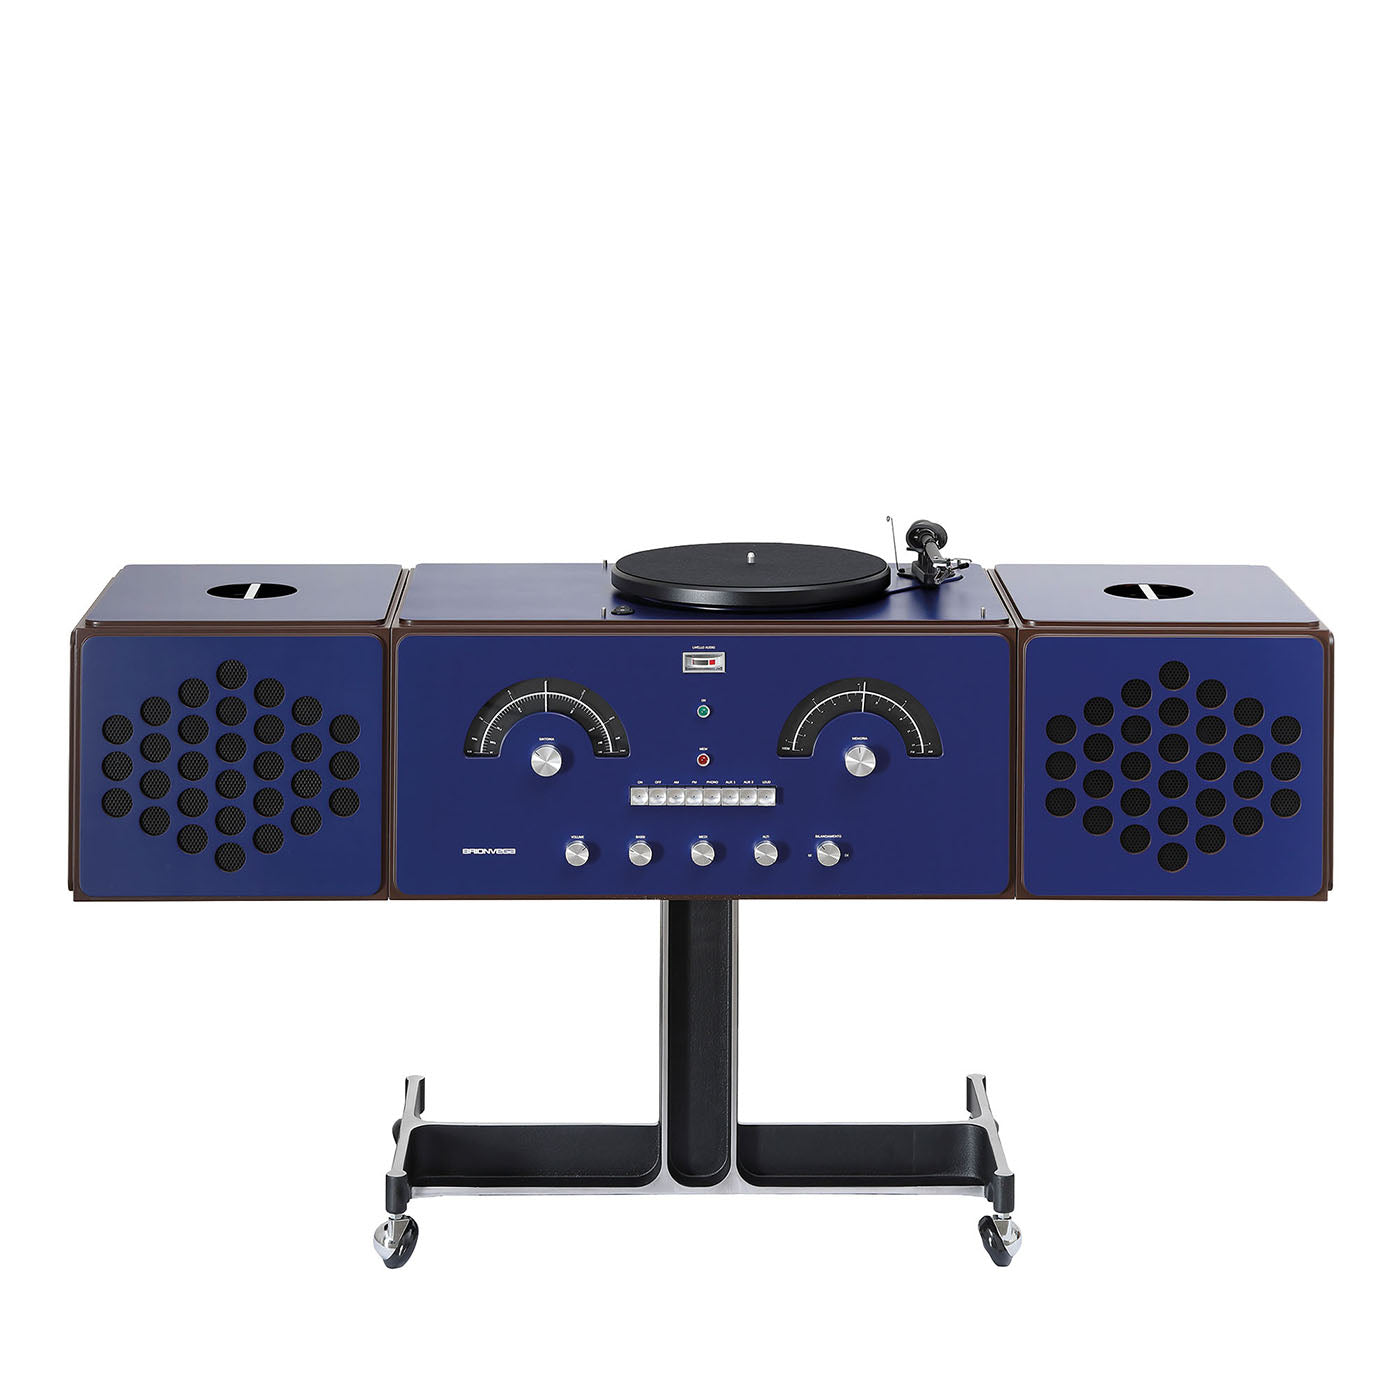 Radiofonografo RR226 azul de Achille y Pier Giacomo Castiglioni - Vista principal